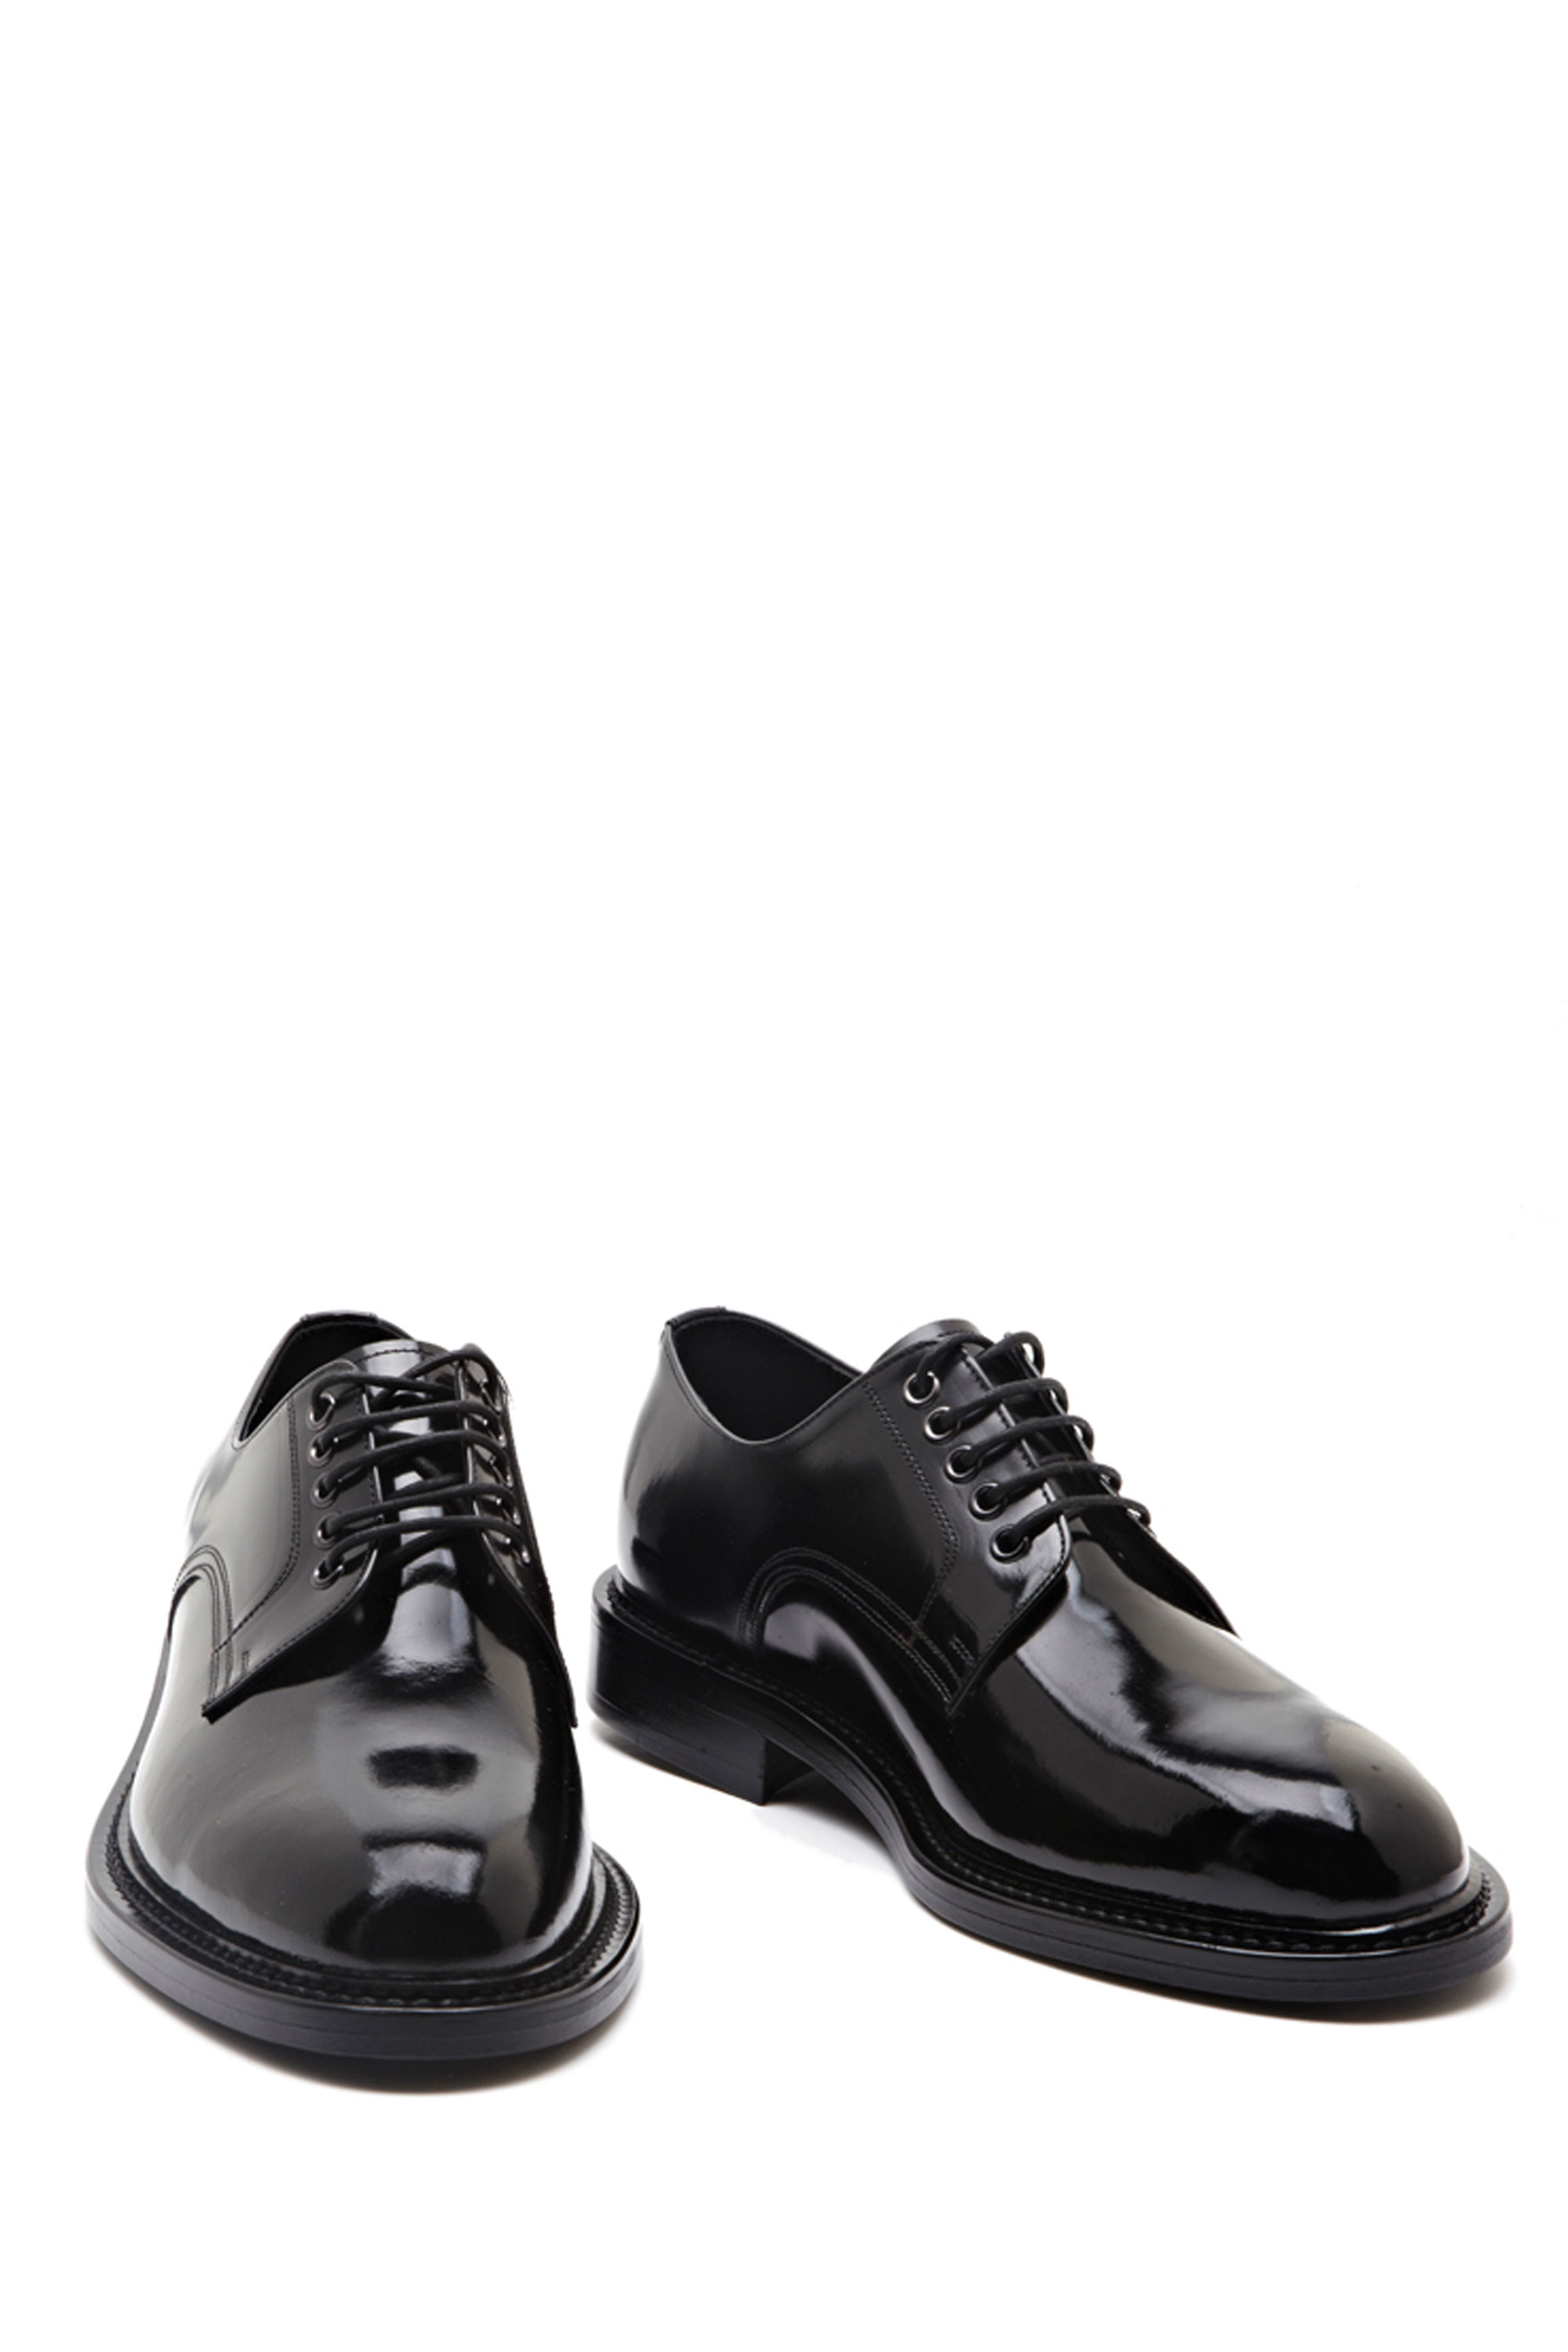 Saint lauren* laceup derby shoes